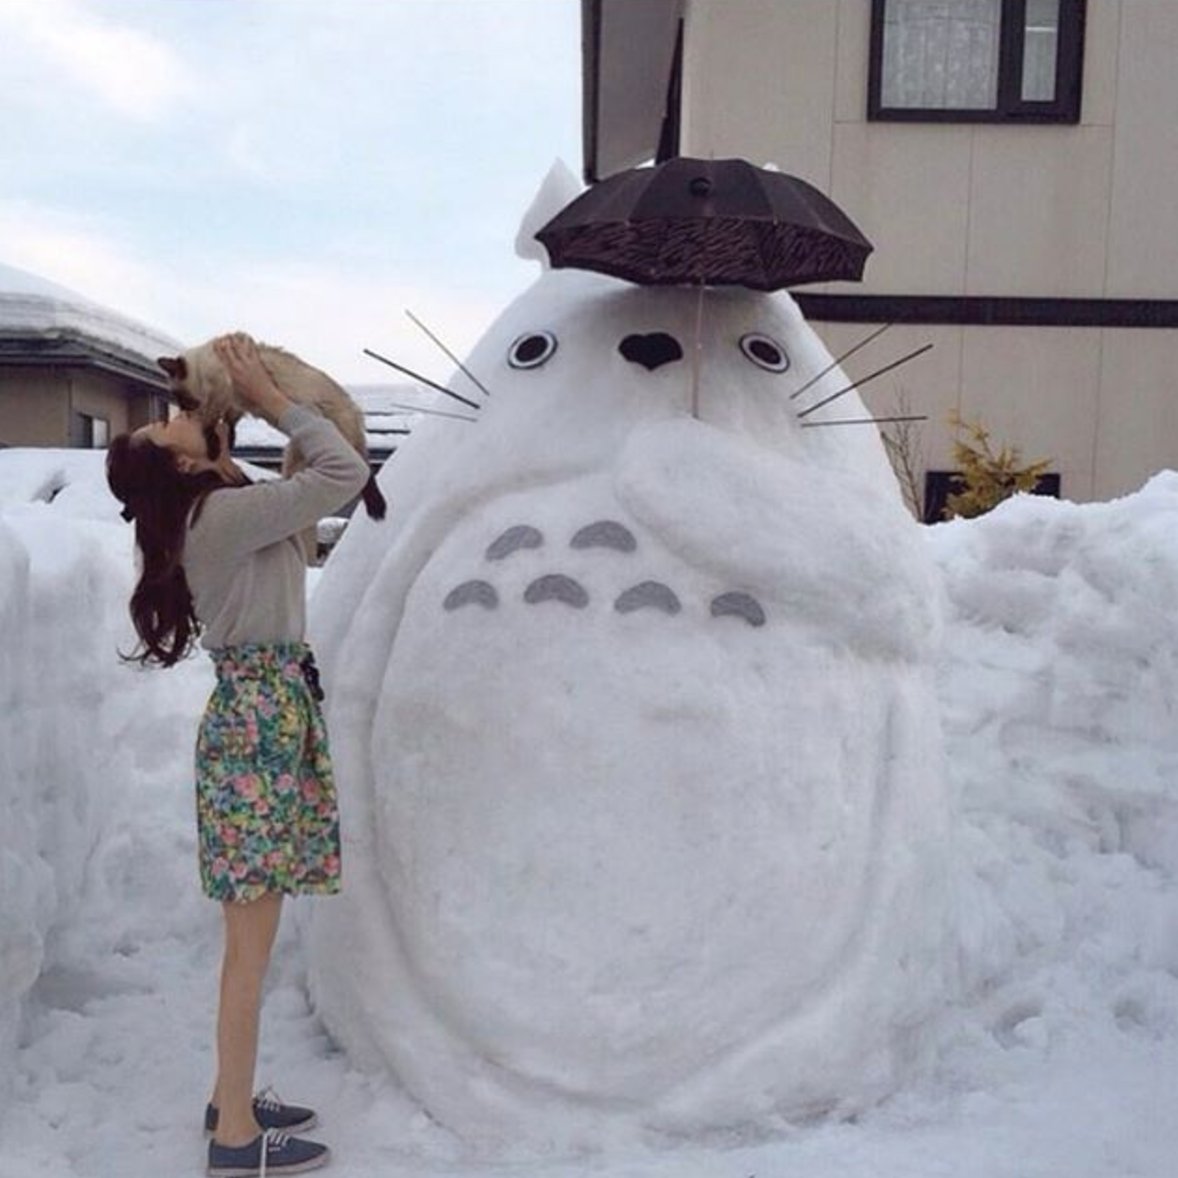 Street art in Japan during snowy season